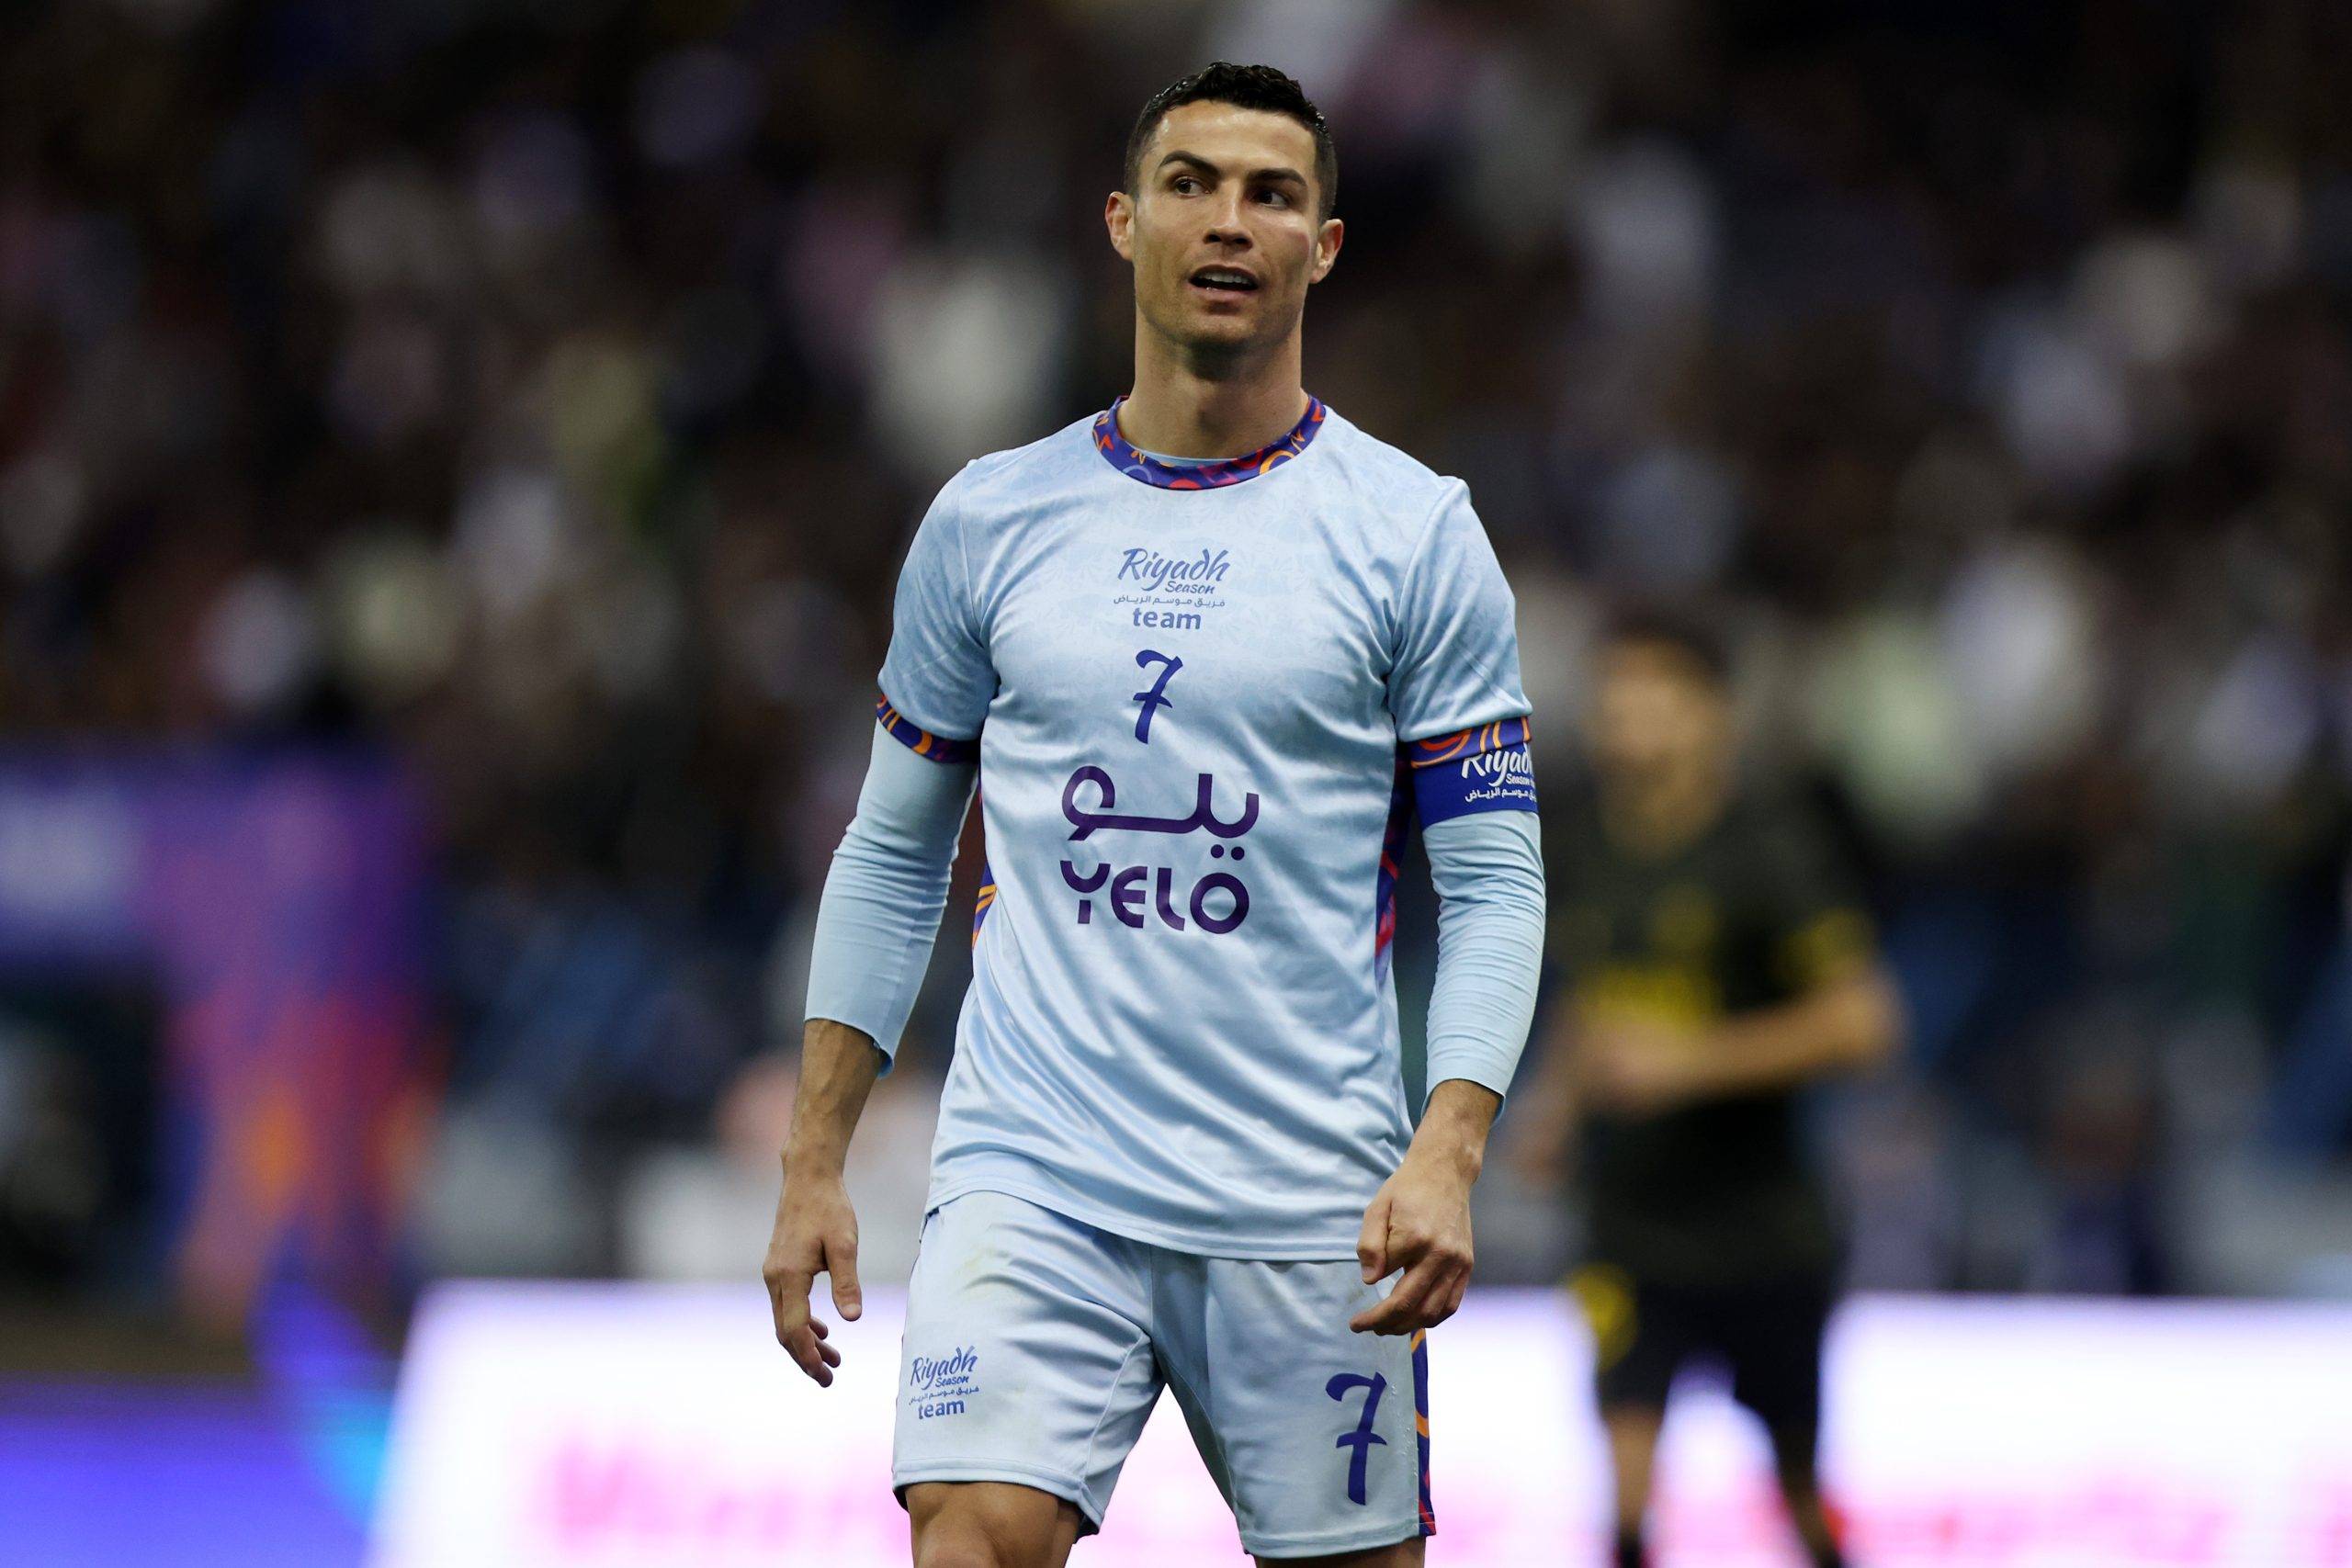 Cristiano Ronaldo's MOTM highlights vs PSG show how happy he looks